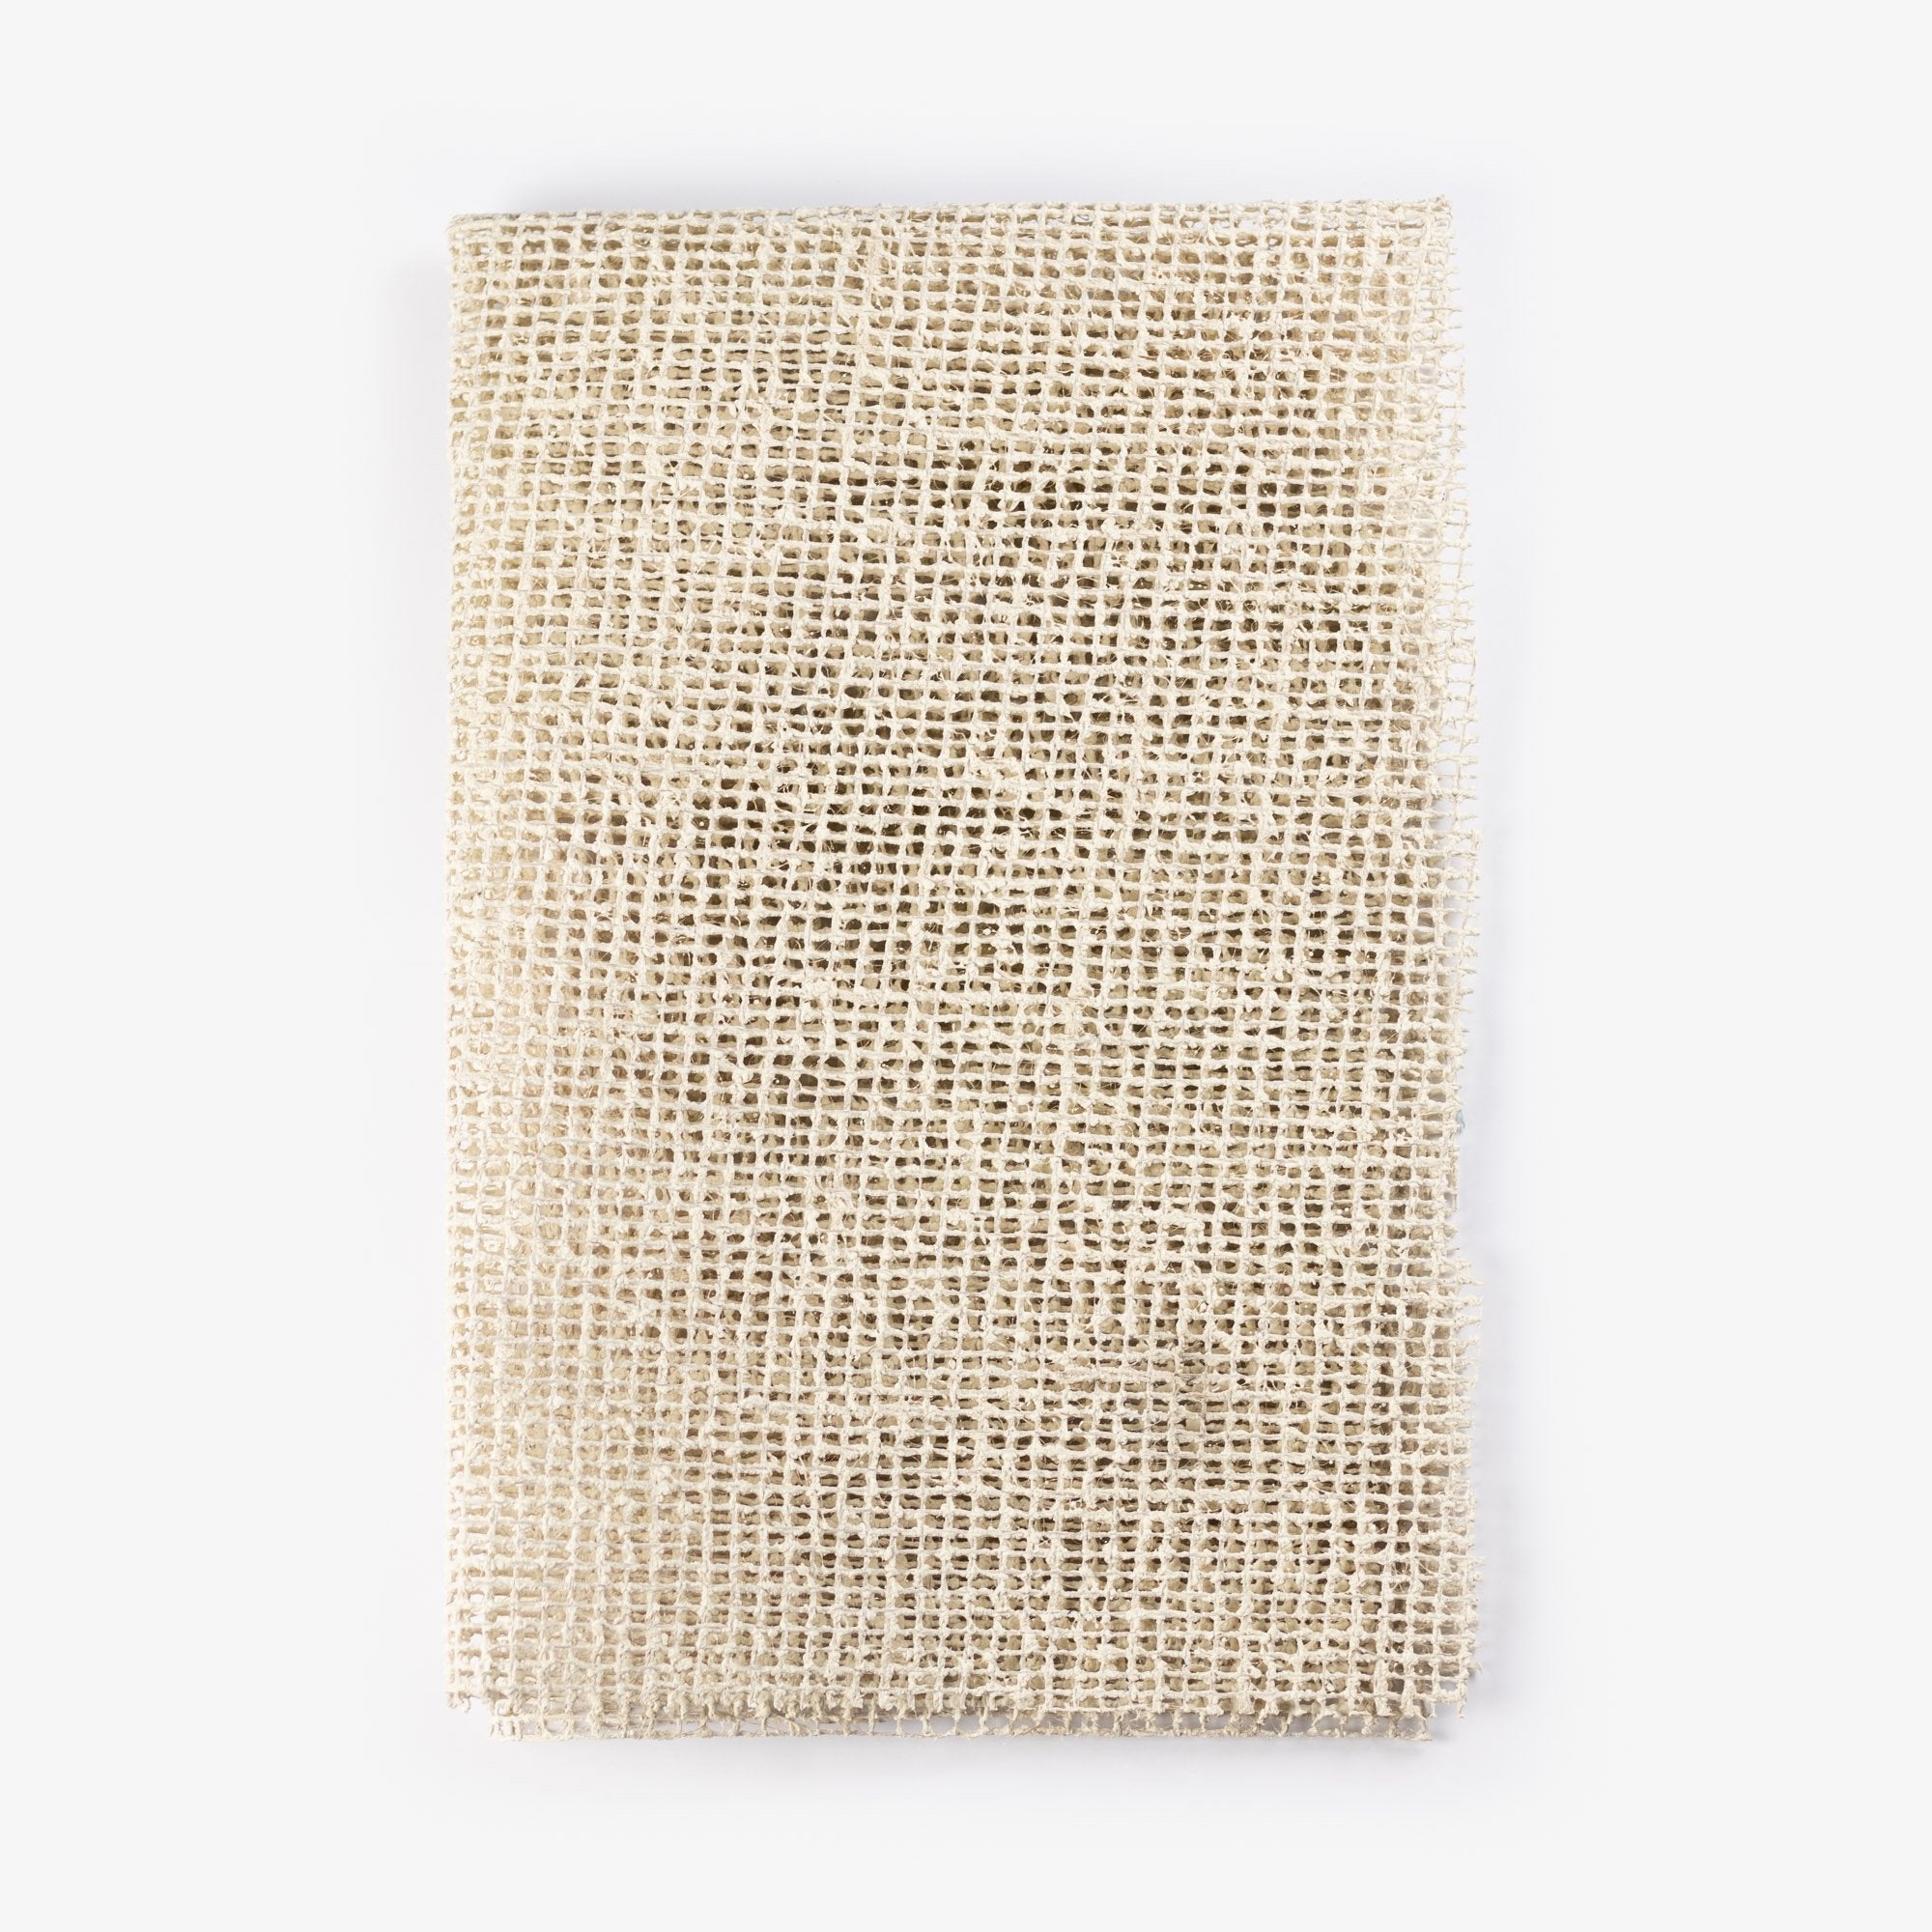 Tappeto in lattice organico e iuta organico del tappeto, 50 x 80 cm